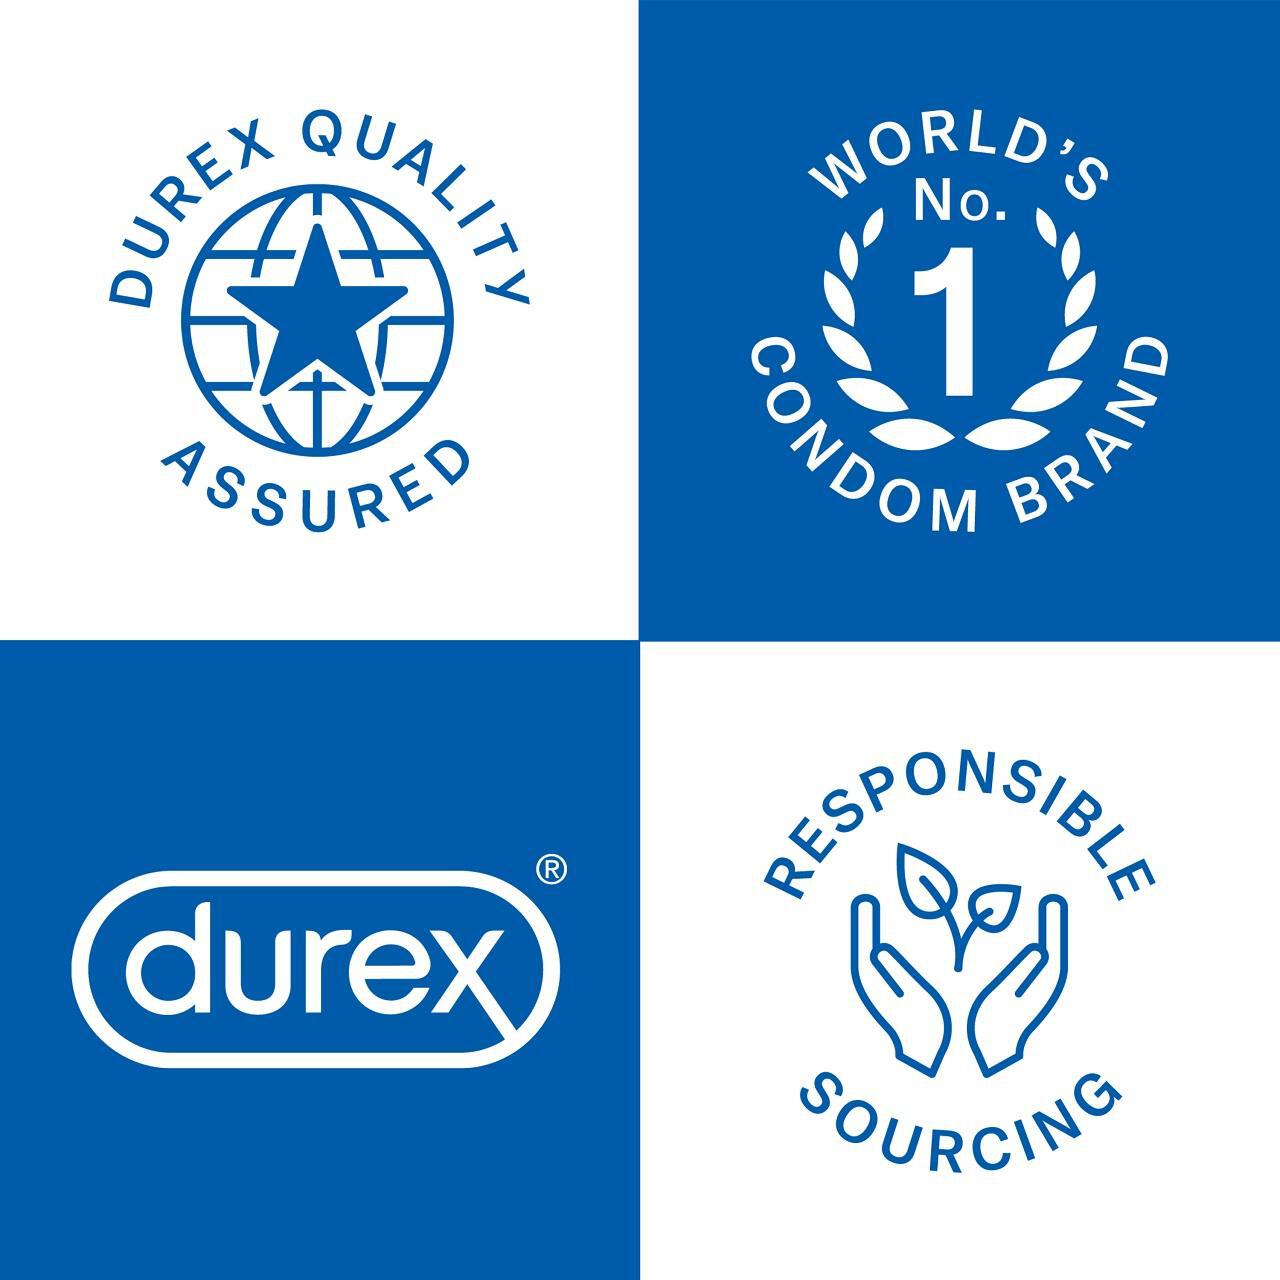 Durex Extended Pleasure 12 Condoms 12 per pack